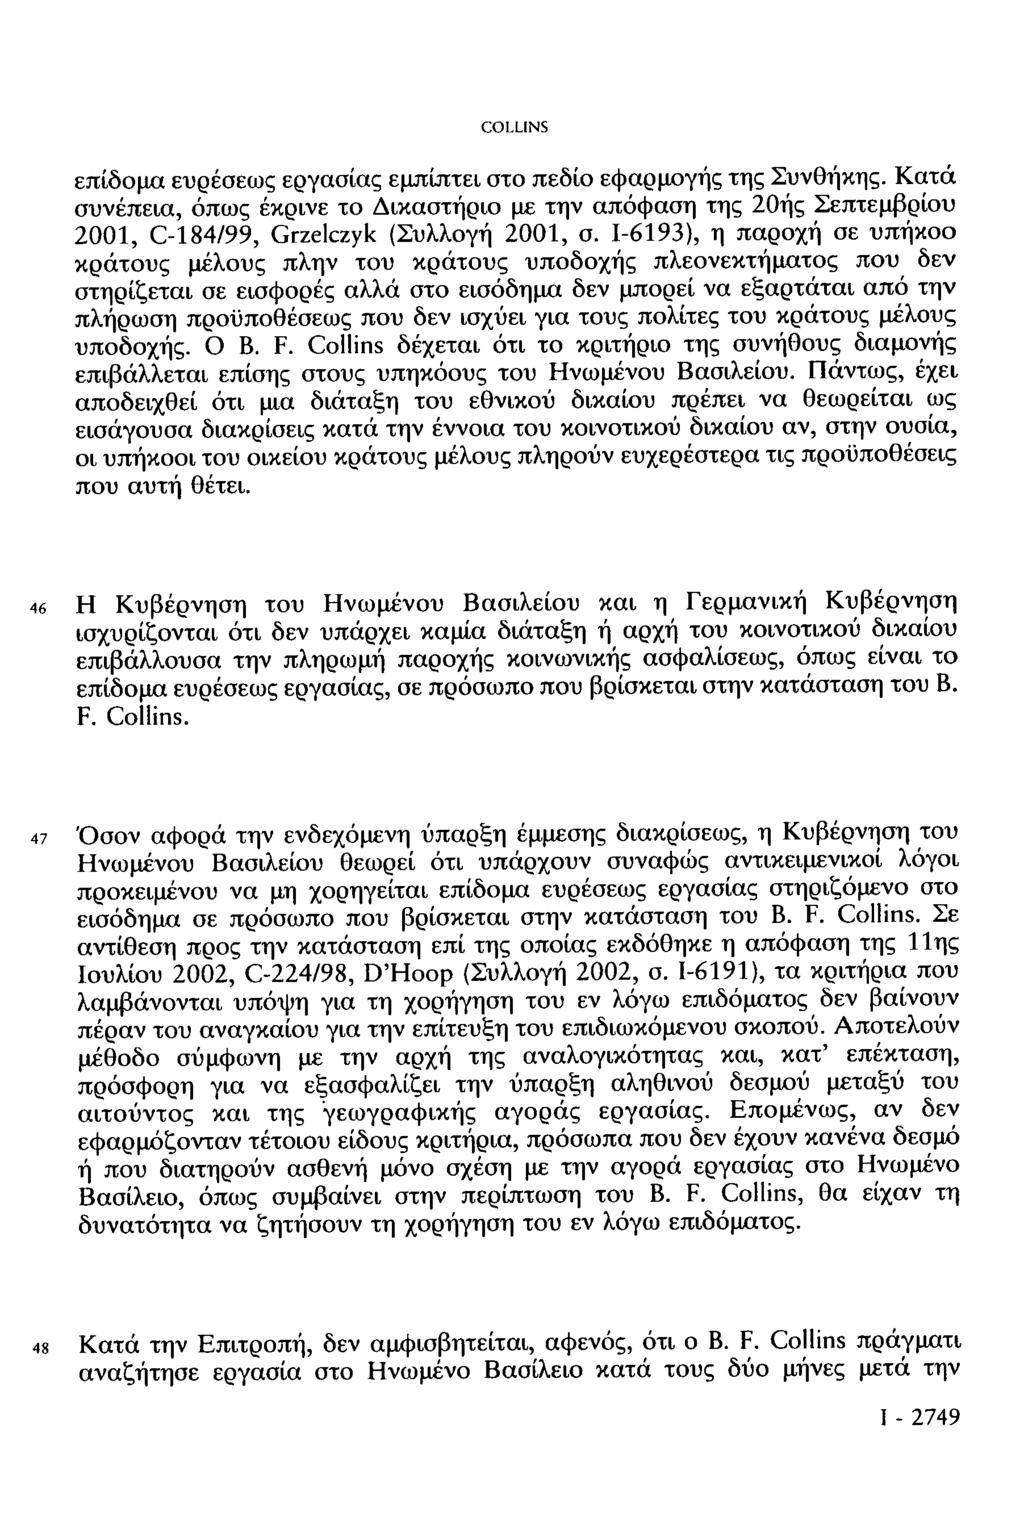 επίδομα ευρέσεως εργασίας εμπίπτει στο πεδίο εφαρμογής της Συνθήκης. Κατά συνέπεια, όπως έκρινε το Δικαστήριο με την απόφαση της 20ής Σεπτεμβρίου 2001, C-184/99, Grzelczyk (Συλλογή 2001, σ.